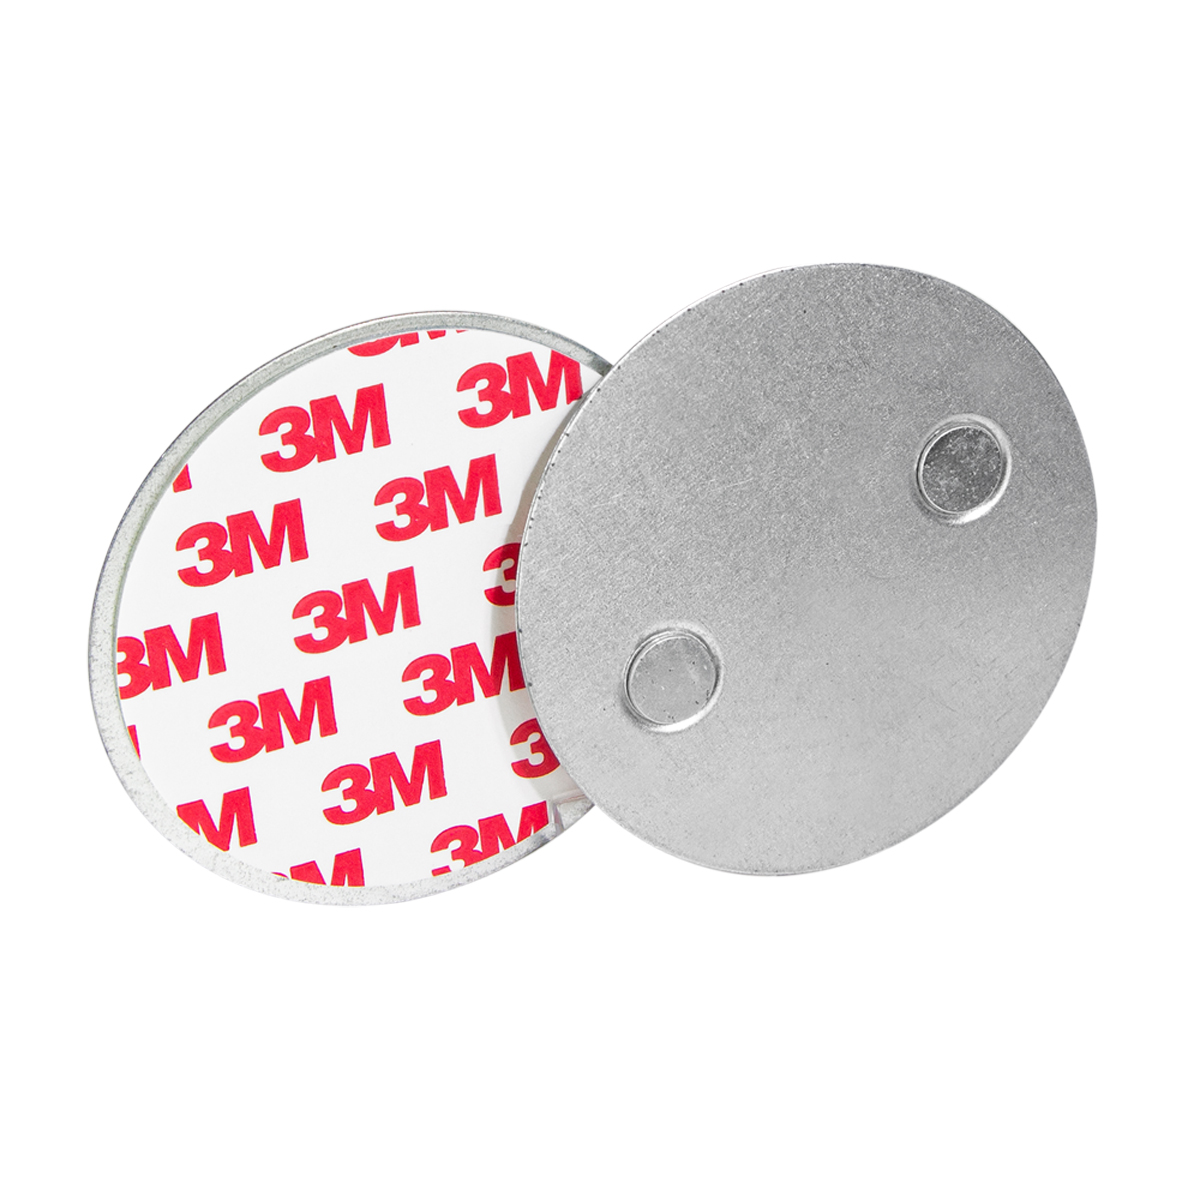 Magnetbefestigung Magnethalterung für Rauchmelder Feuermelder Magnet Halterung 